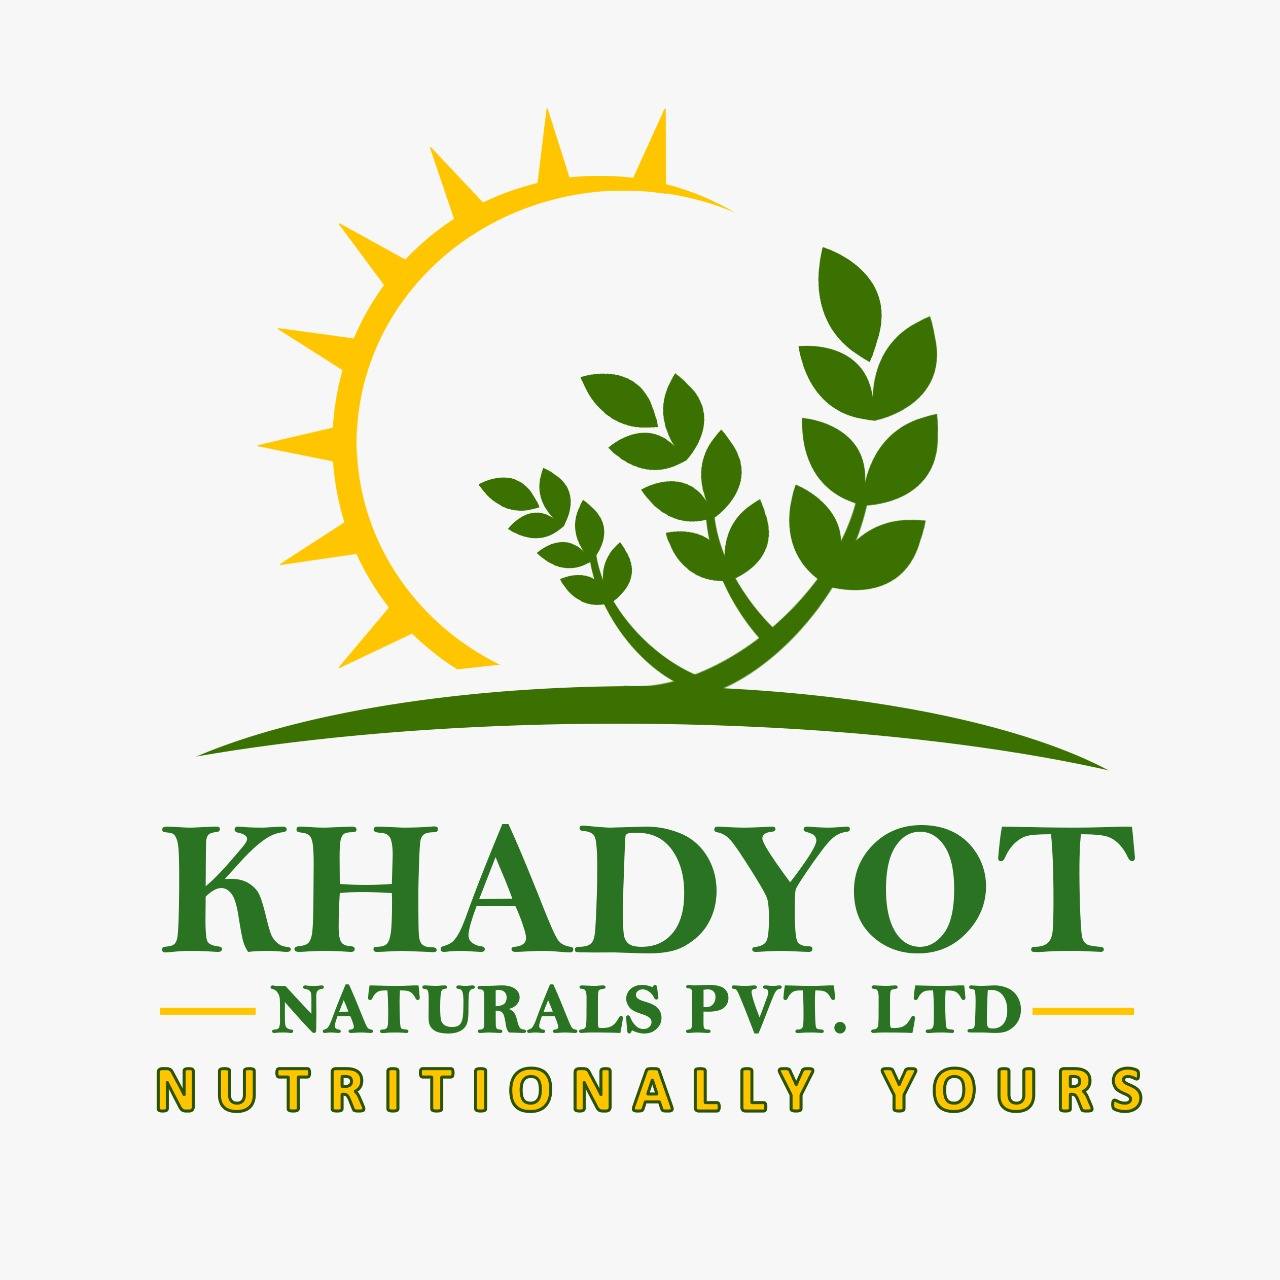 Khadyot Naturals Pvt Ltd logo